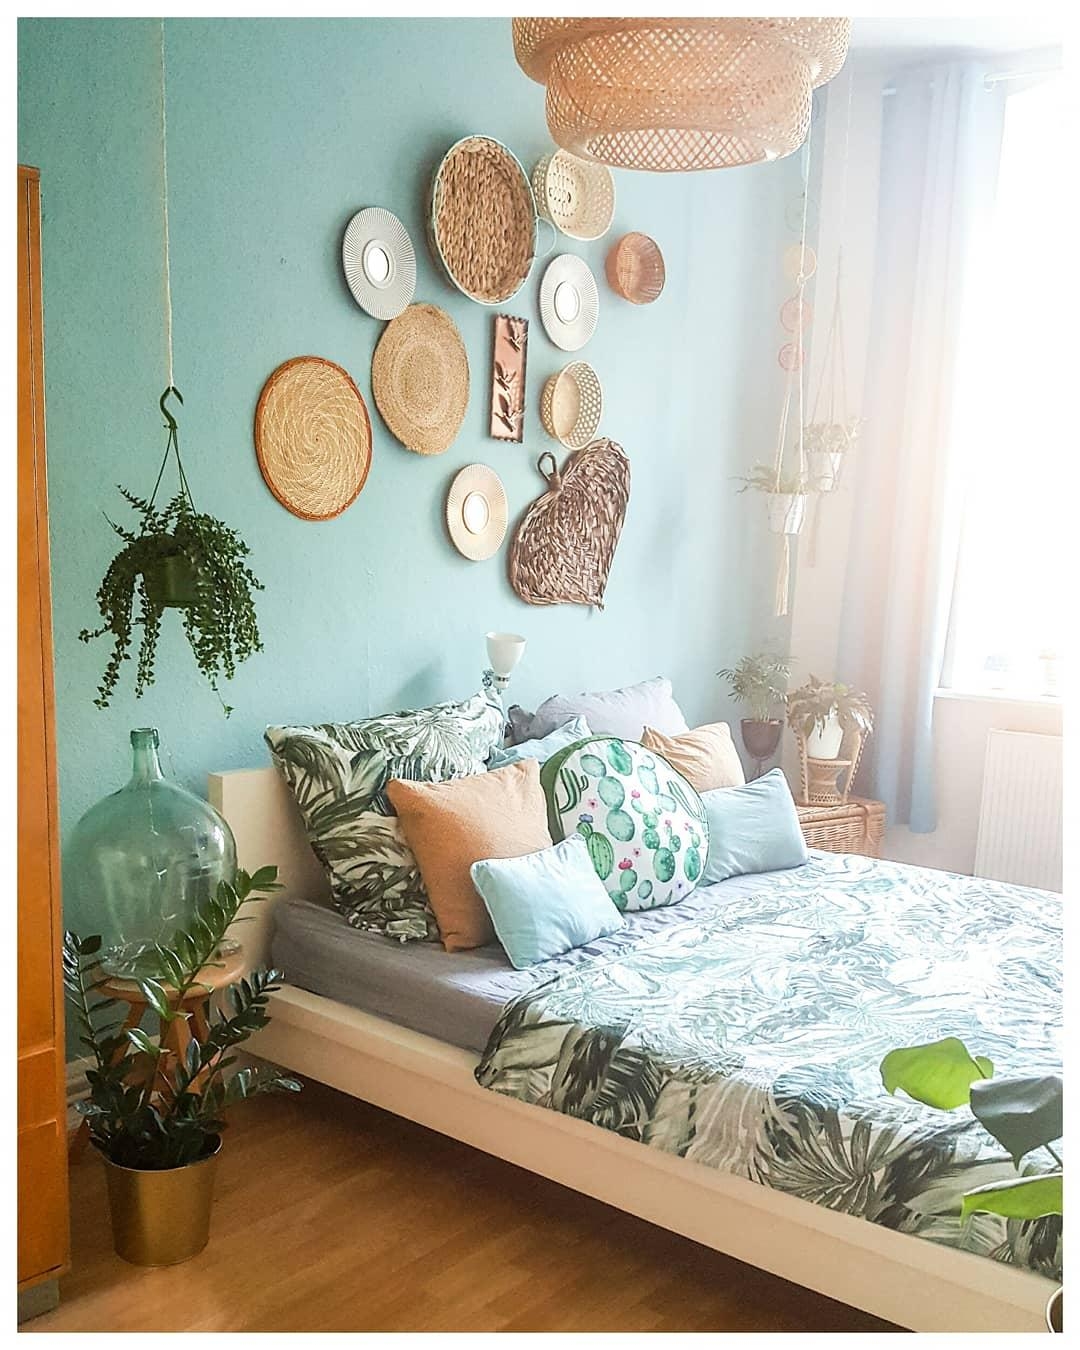 #vintagehome #plantlover #bedroom #solebich #woodlover